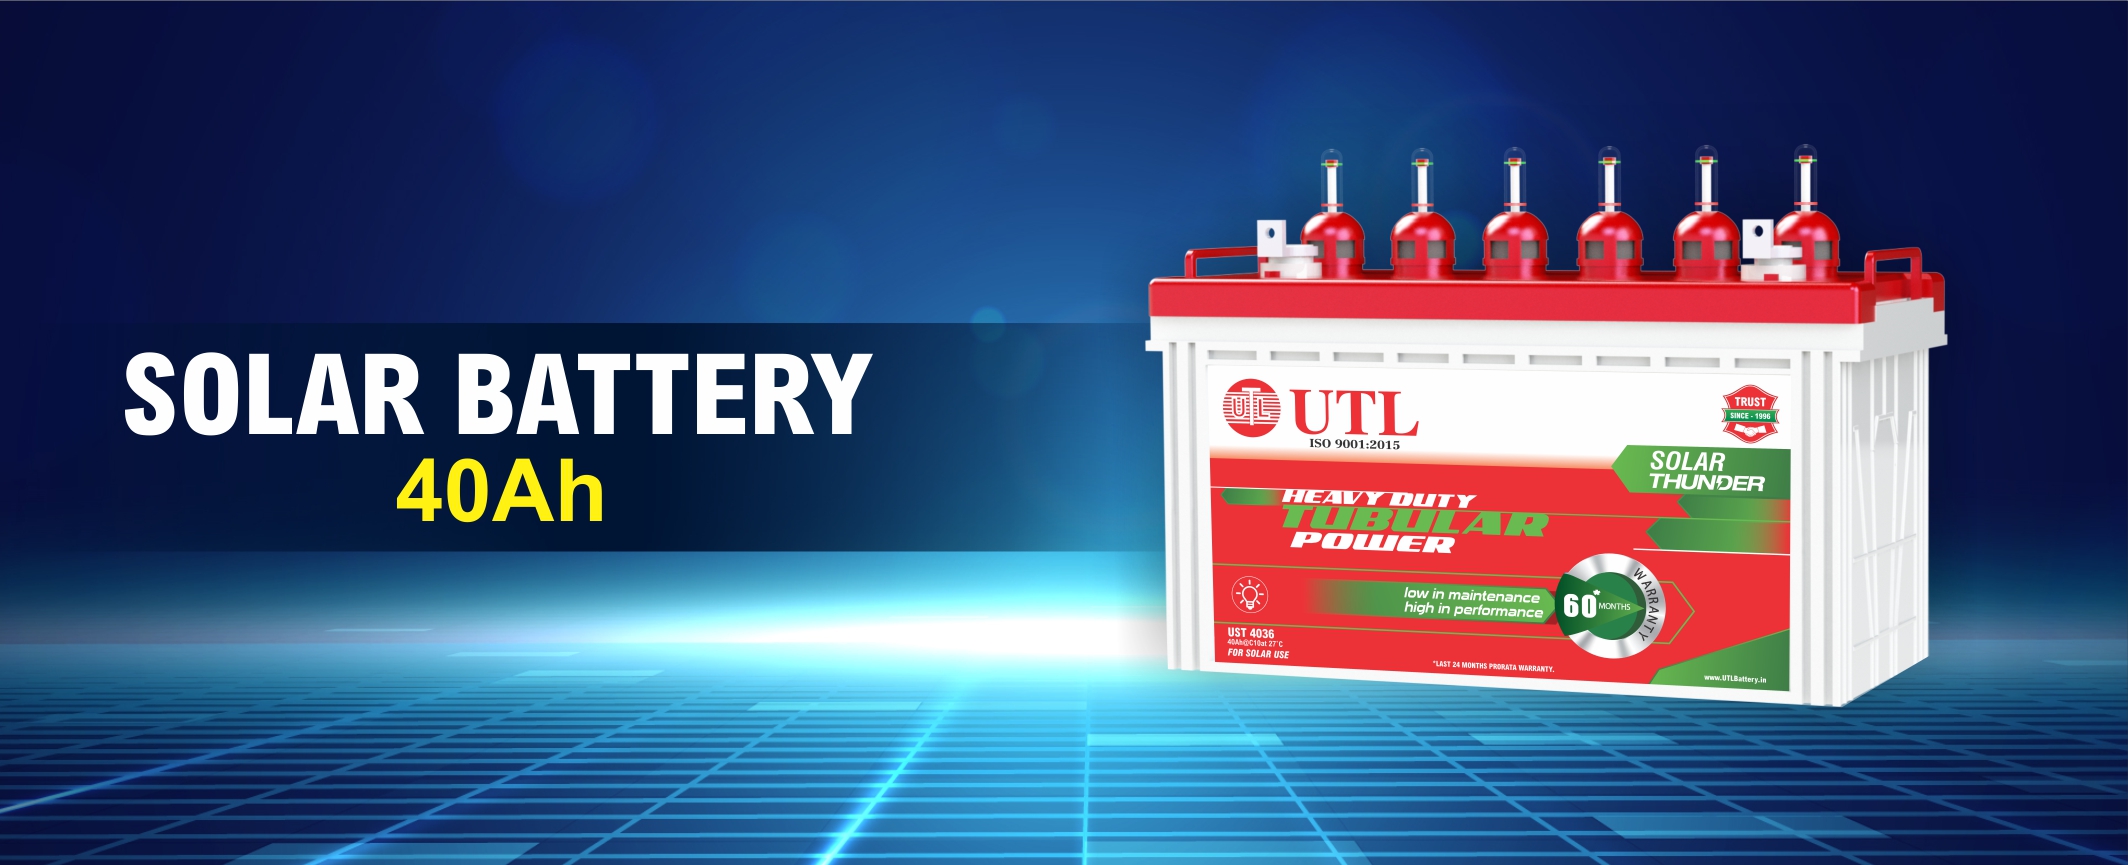 UTL 40Ah solar battery